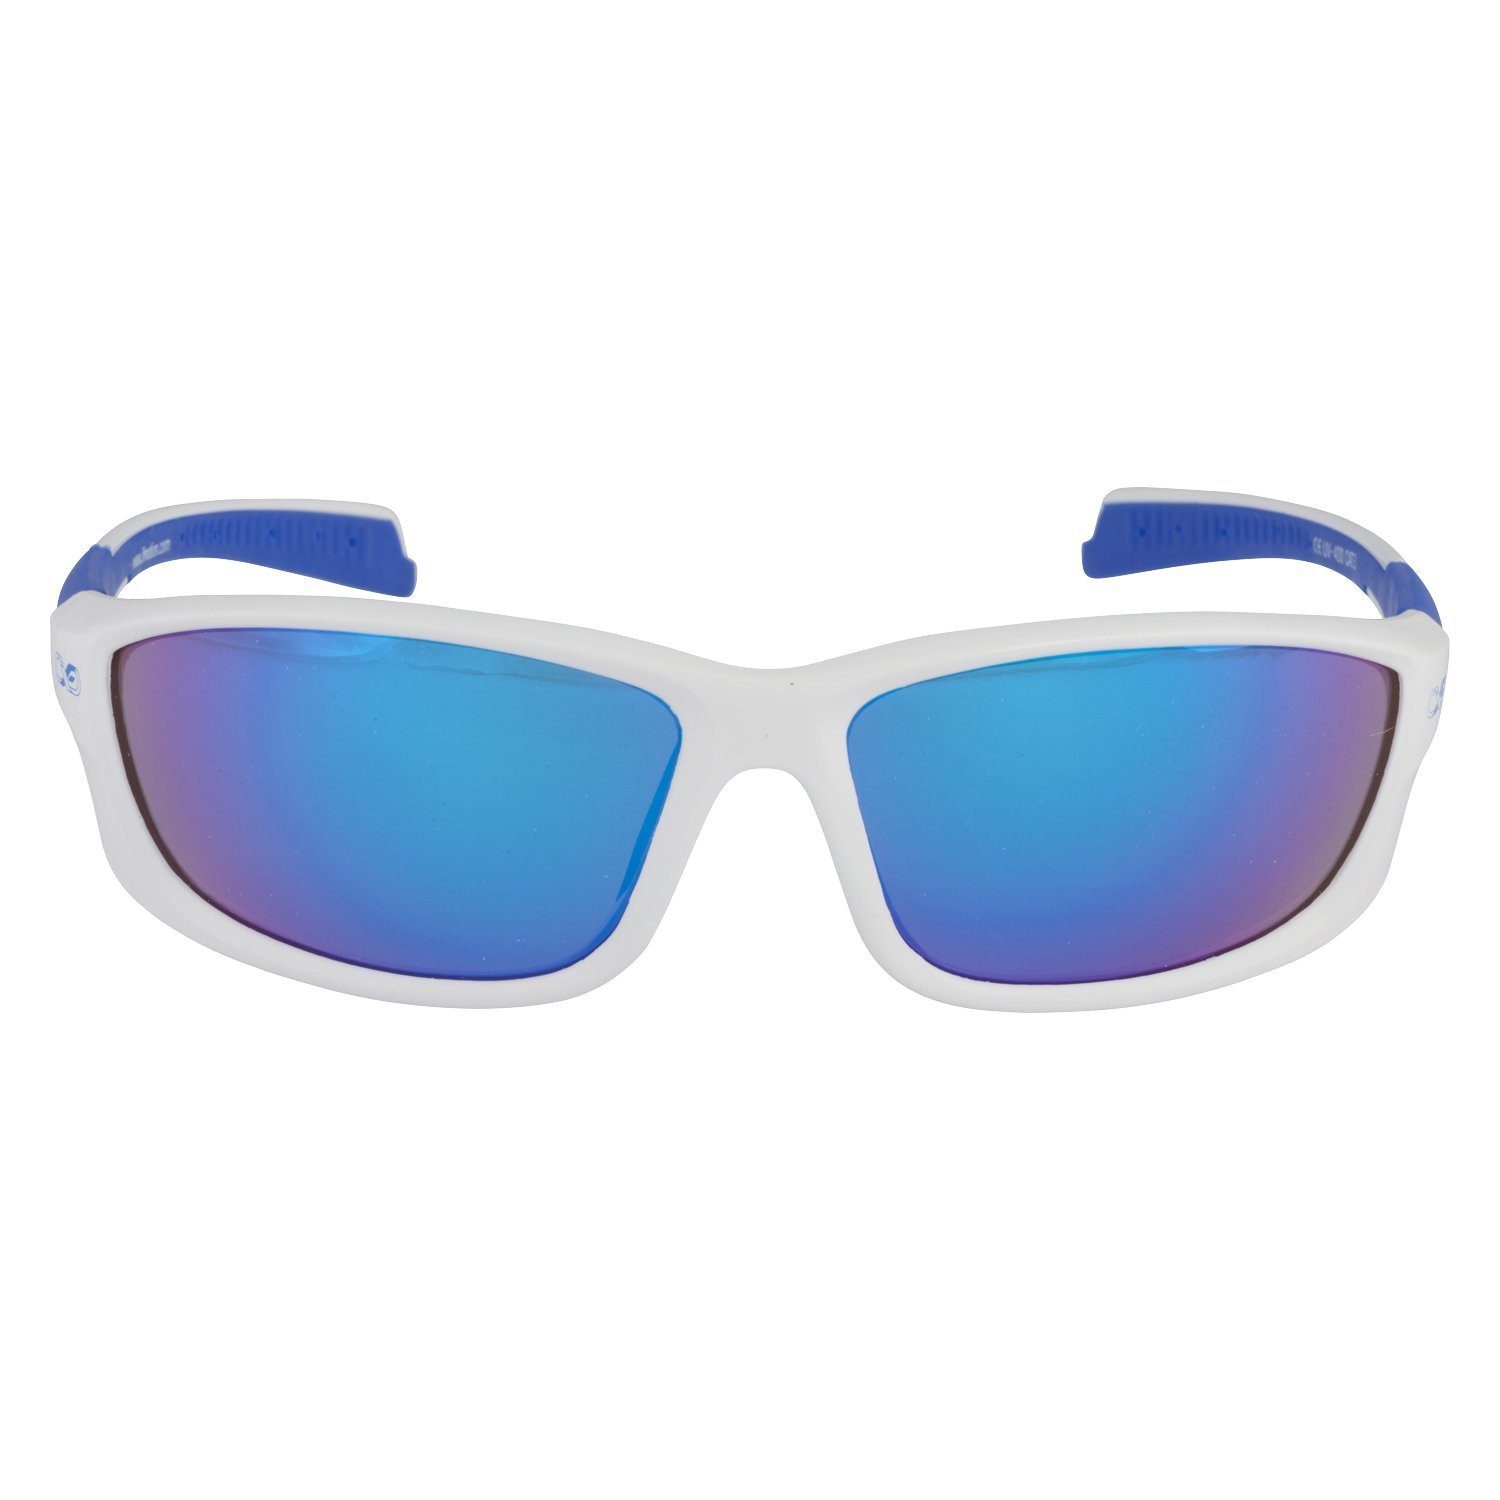 Sonnenbrille / 3 Infinite in Reinigungstuch) (Mit Sportbrille Viwanda Aufbewahrungsbeutel Eins Farben